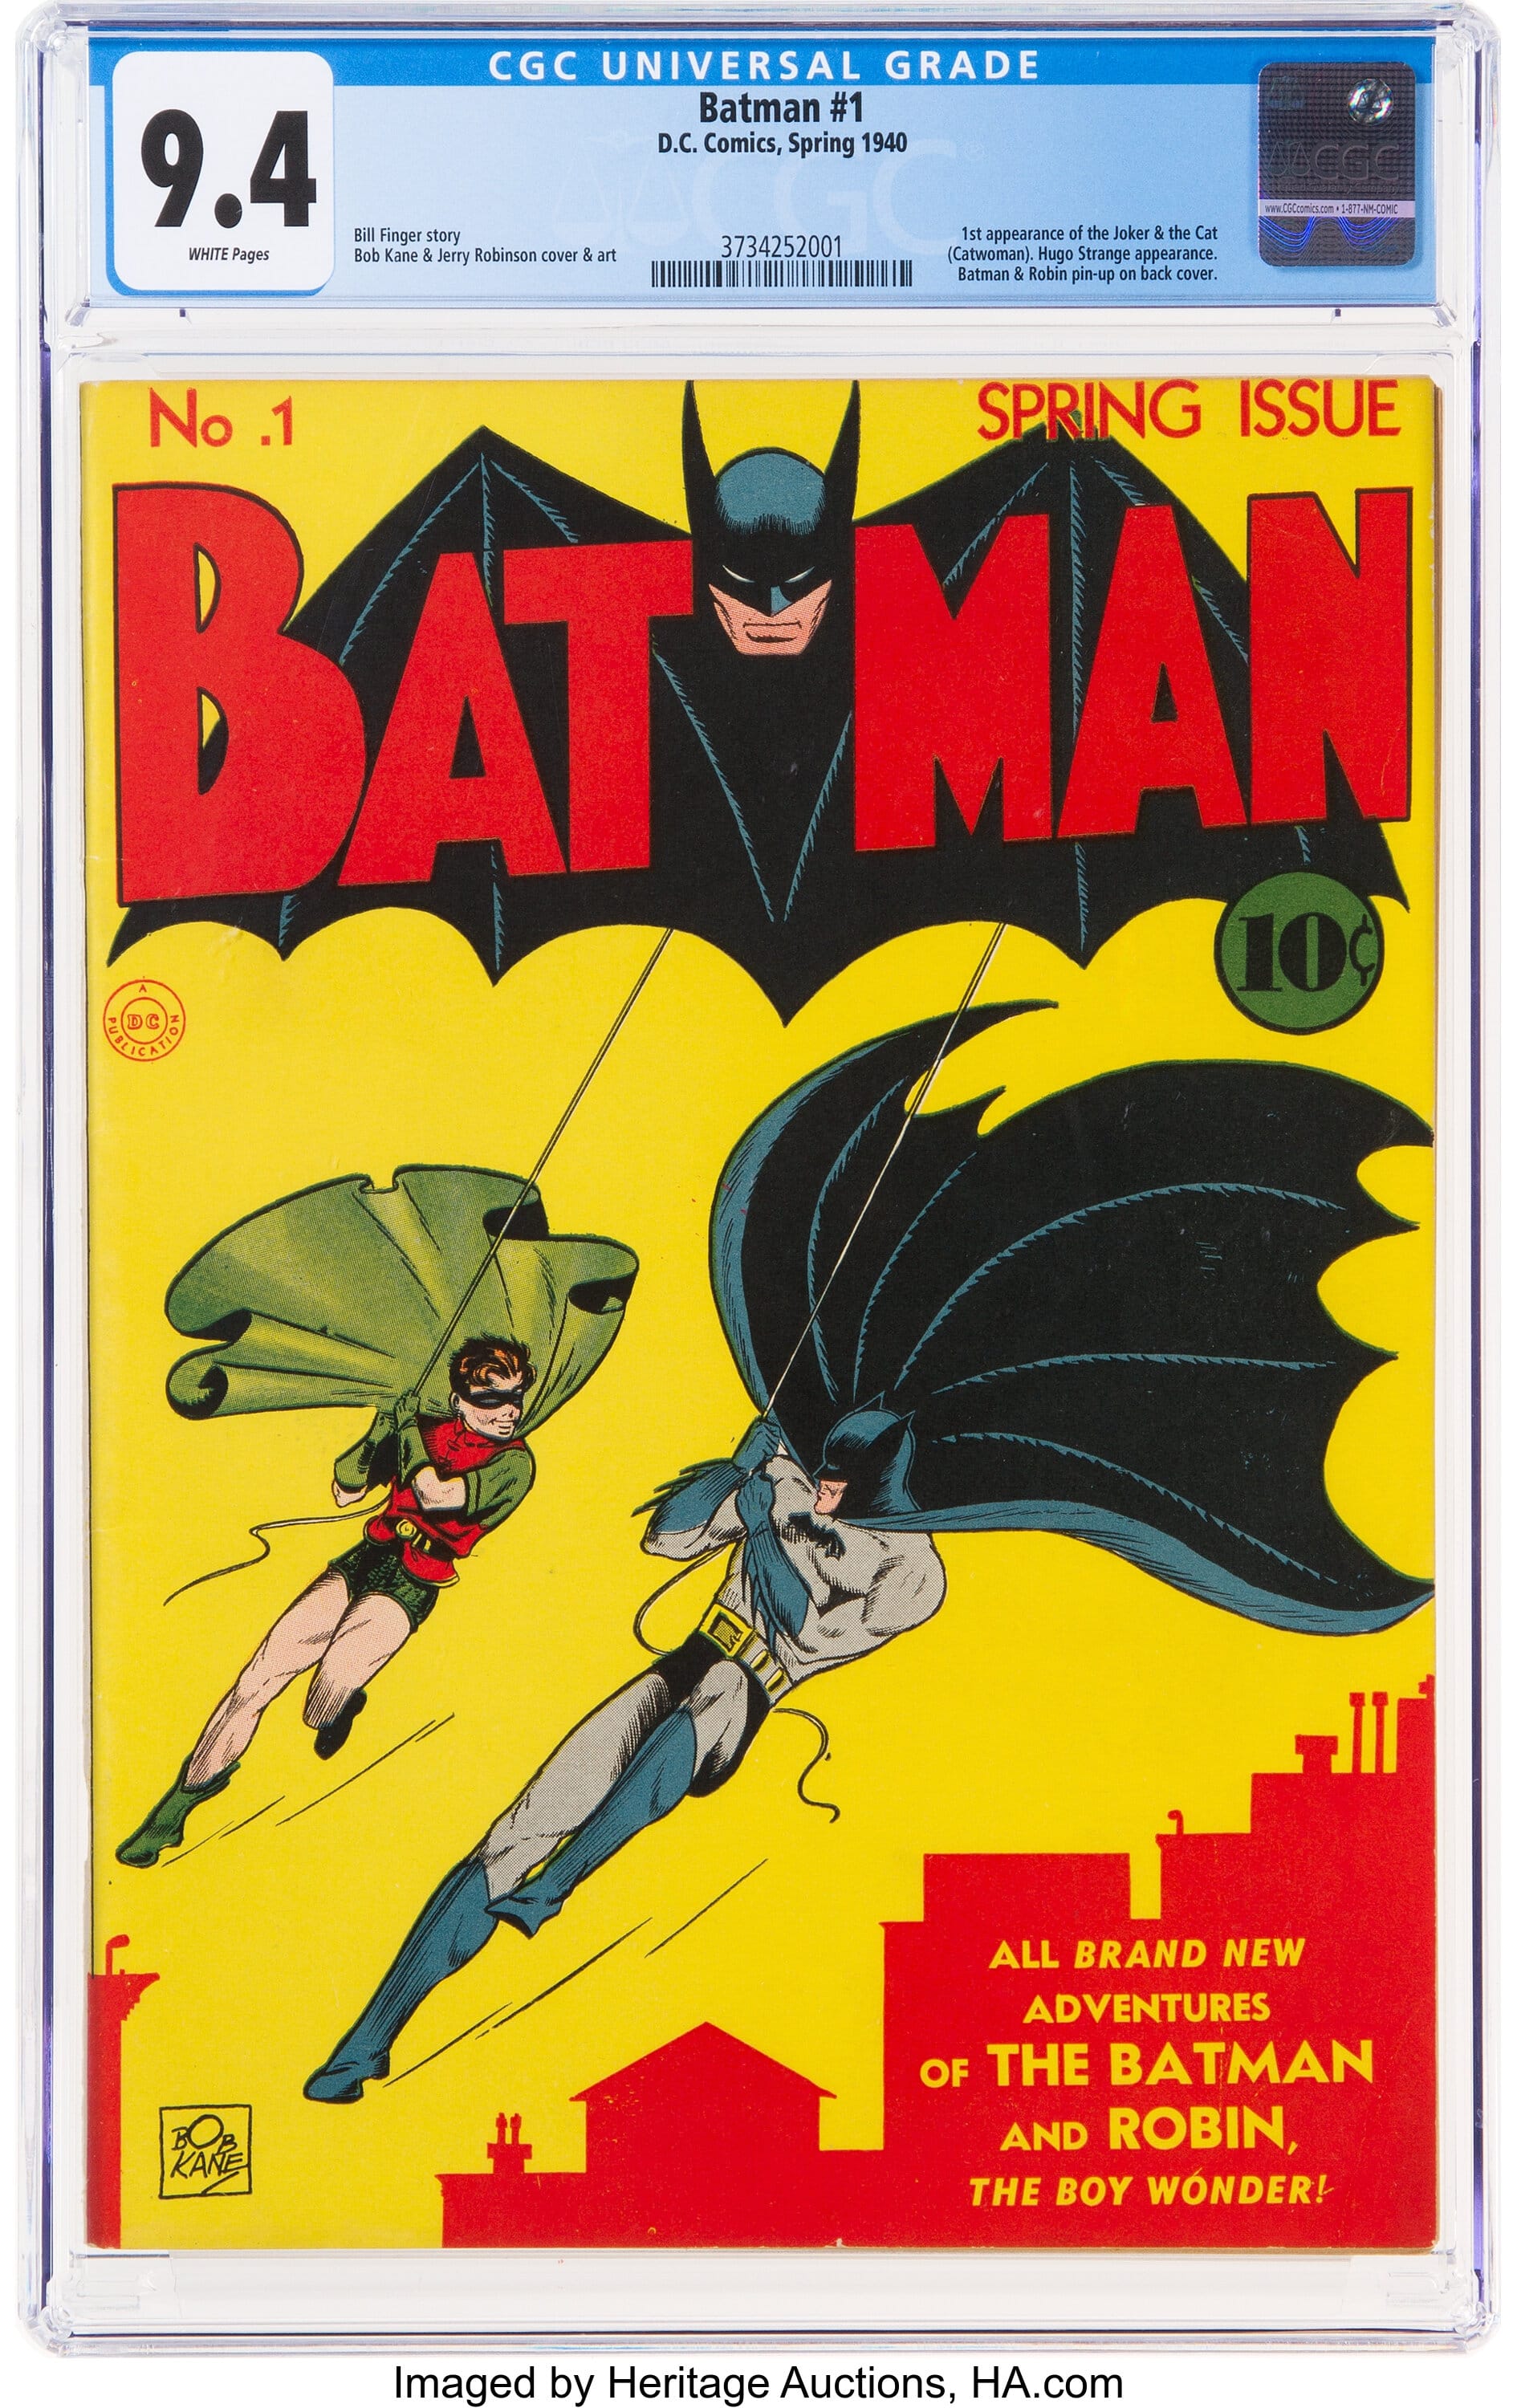 Teurer Batman-Comic: Das Heft aus dem Jahr 1940 stellte beim Auktionsverkauf einen Rekord auf.